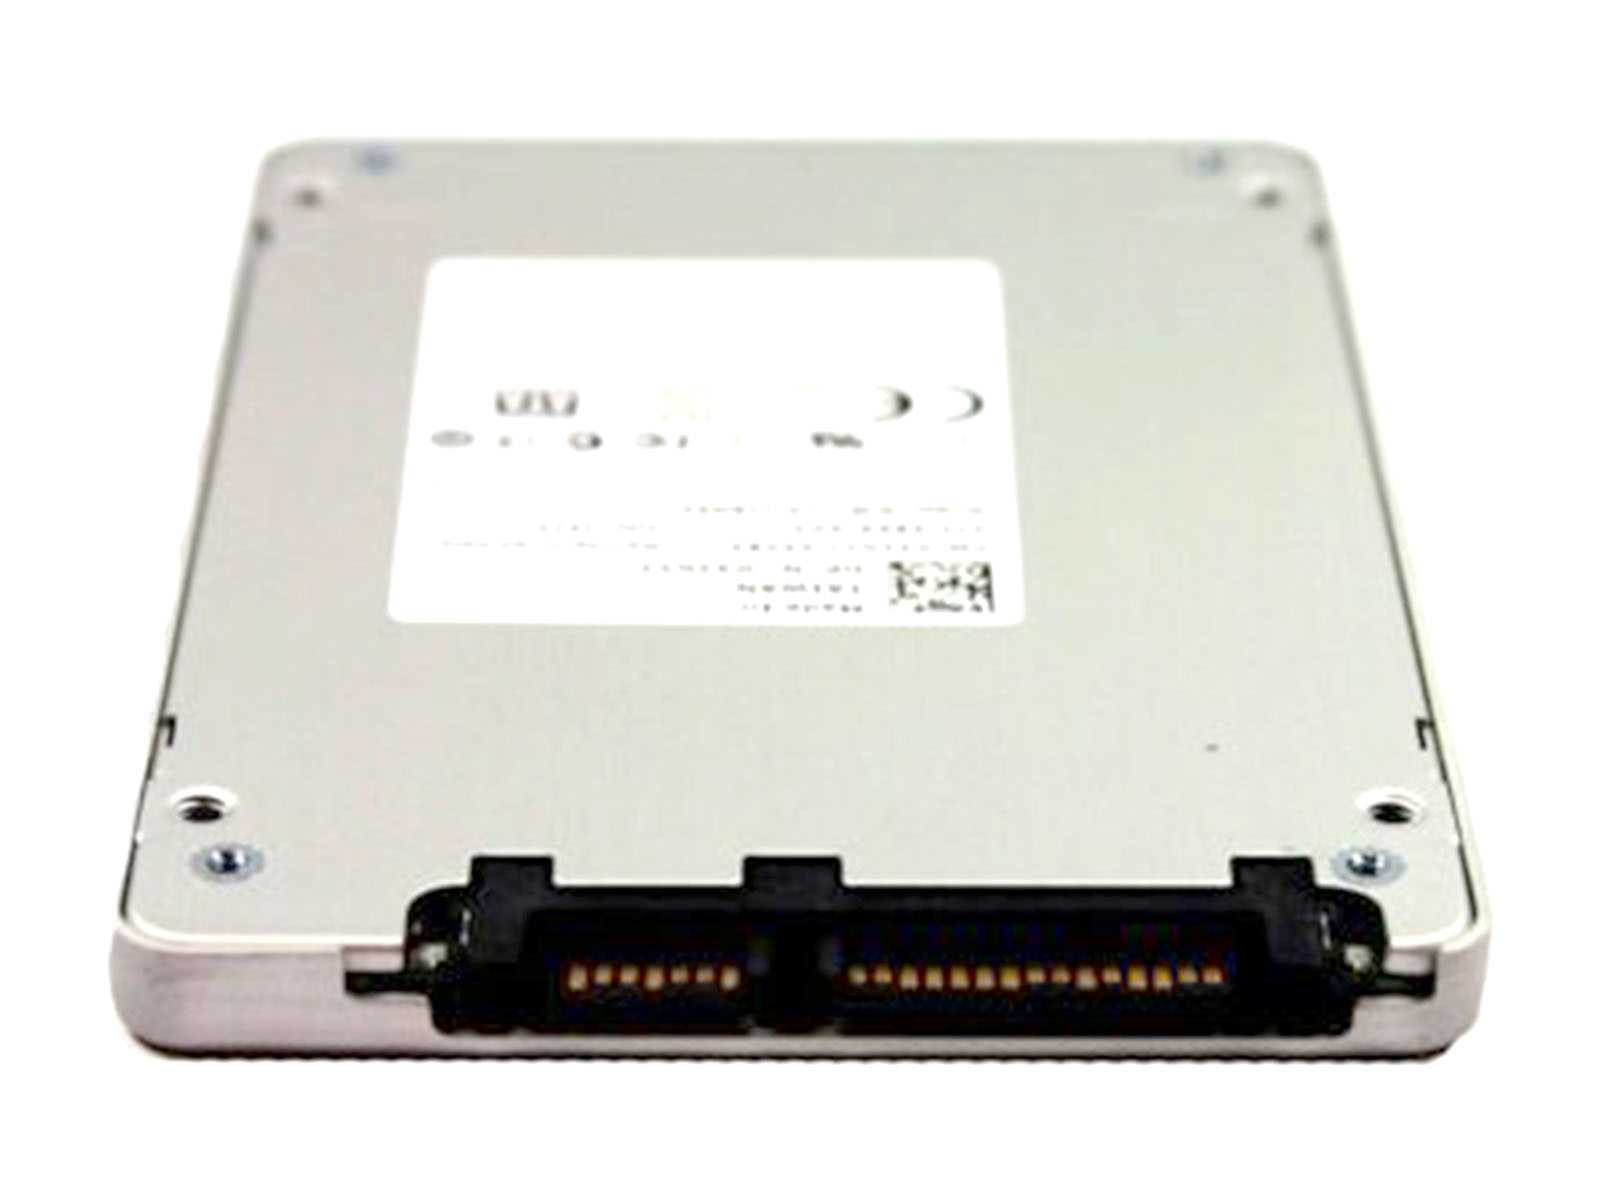 Liteon 2.5" SATA SSD